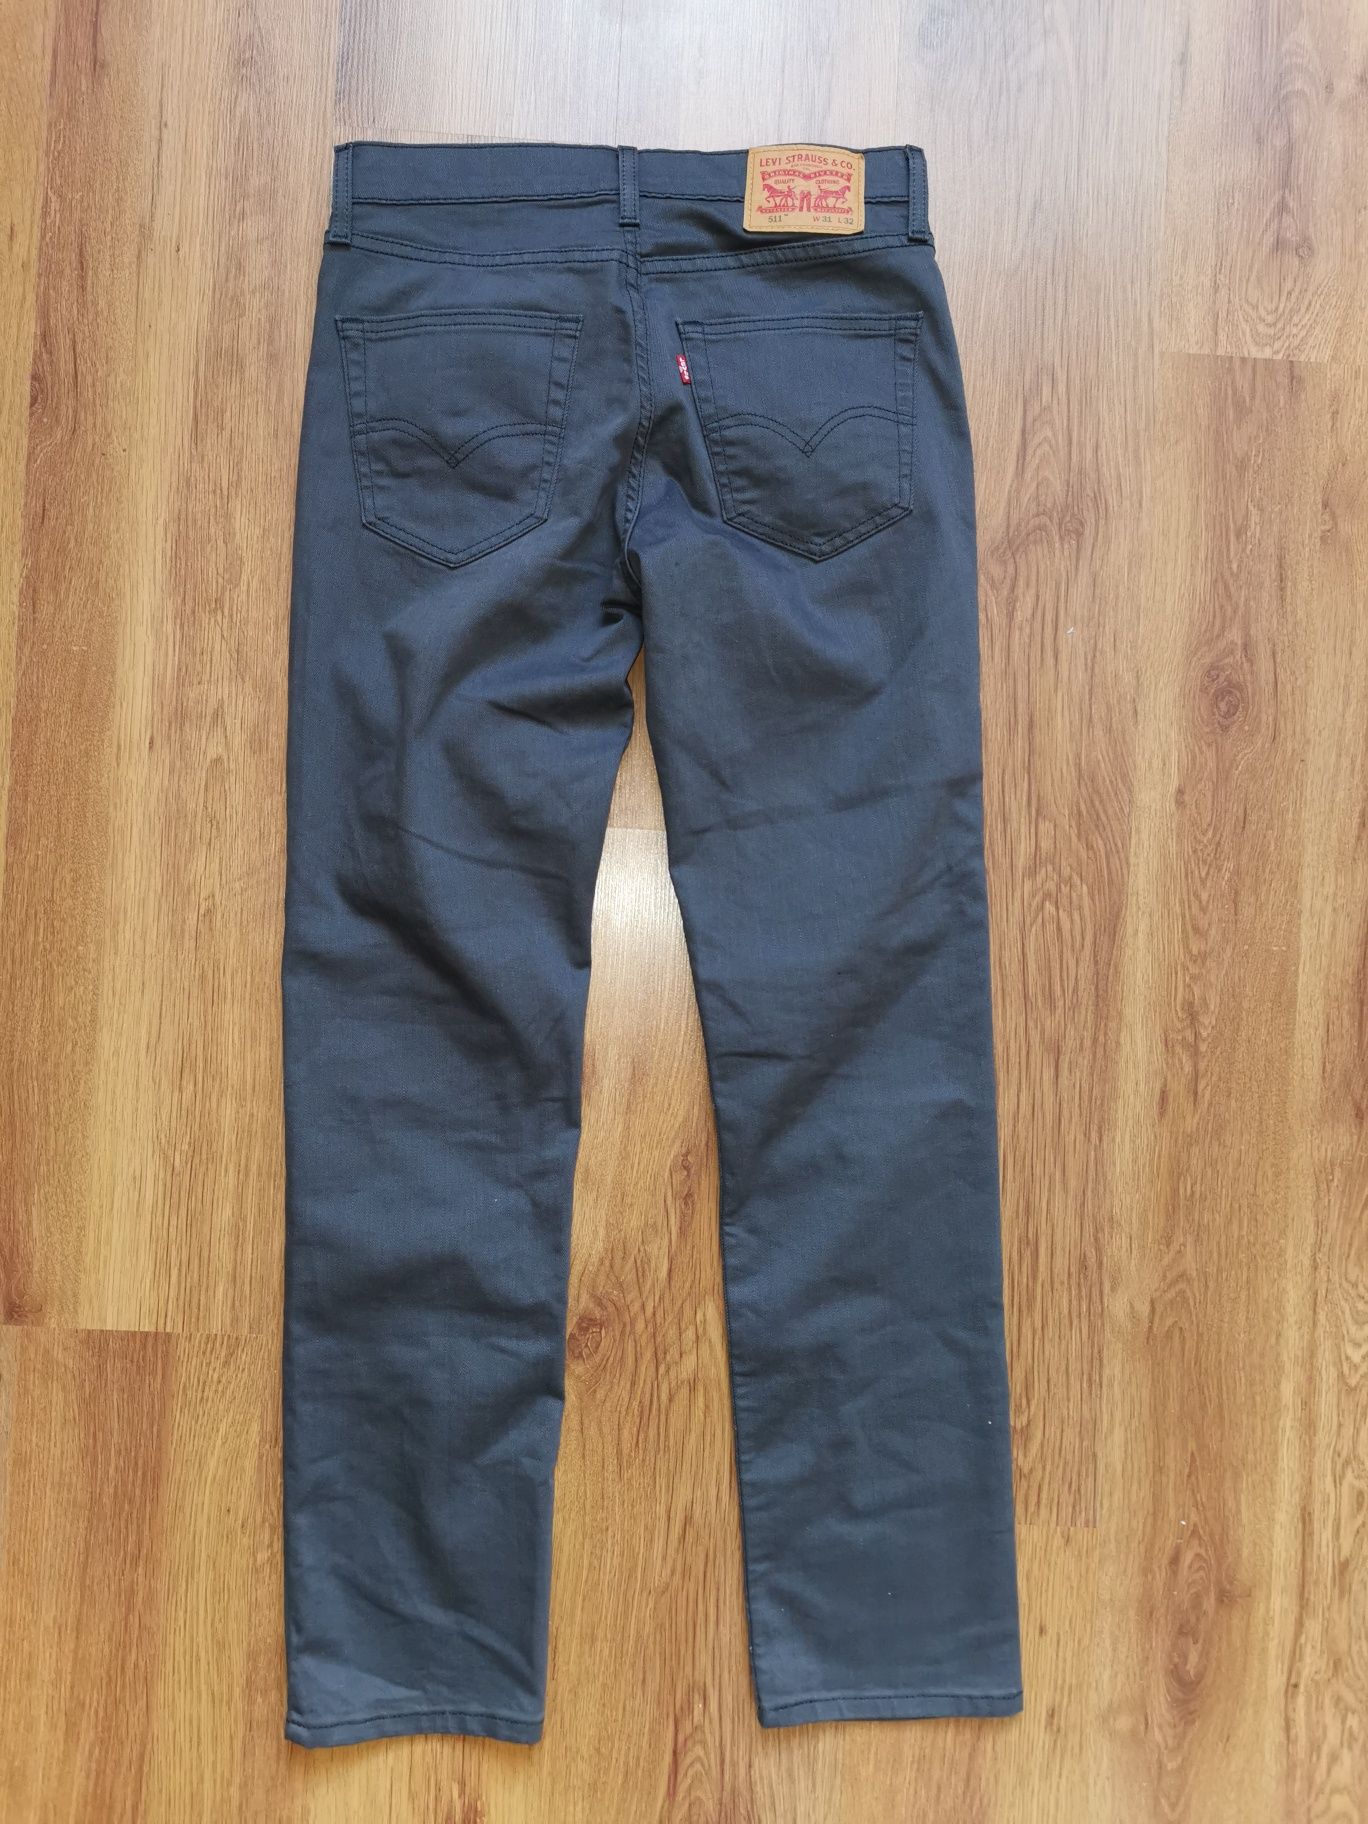 Levi's 511 Slim water less W31 L32 spodnie jeansowe jeansy Levis nowe